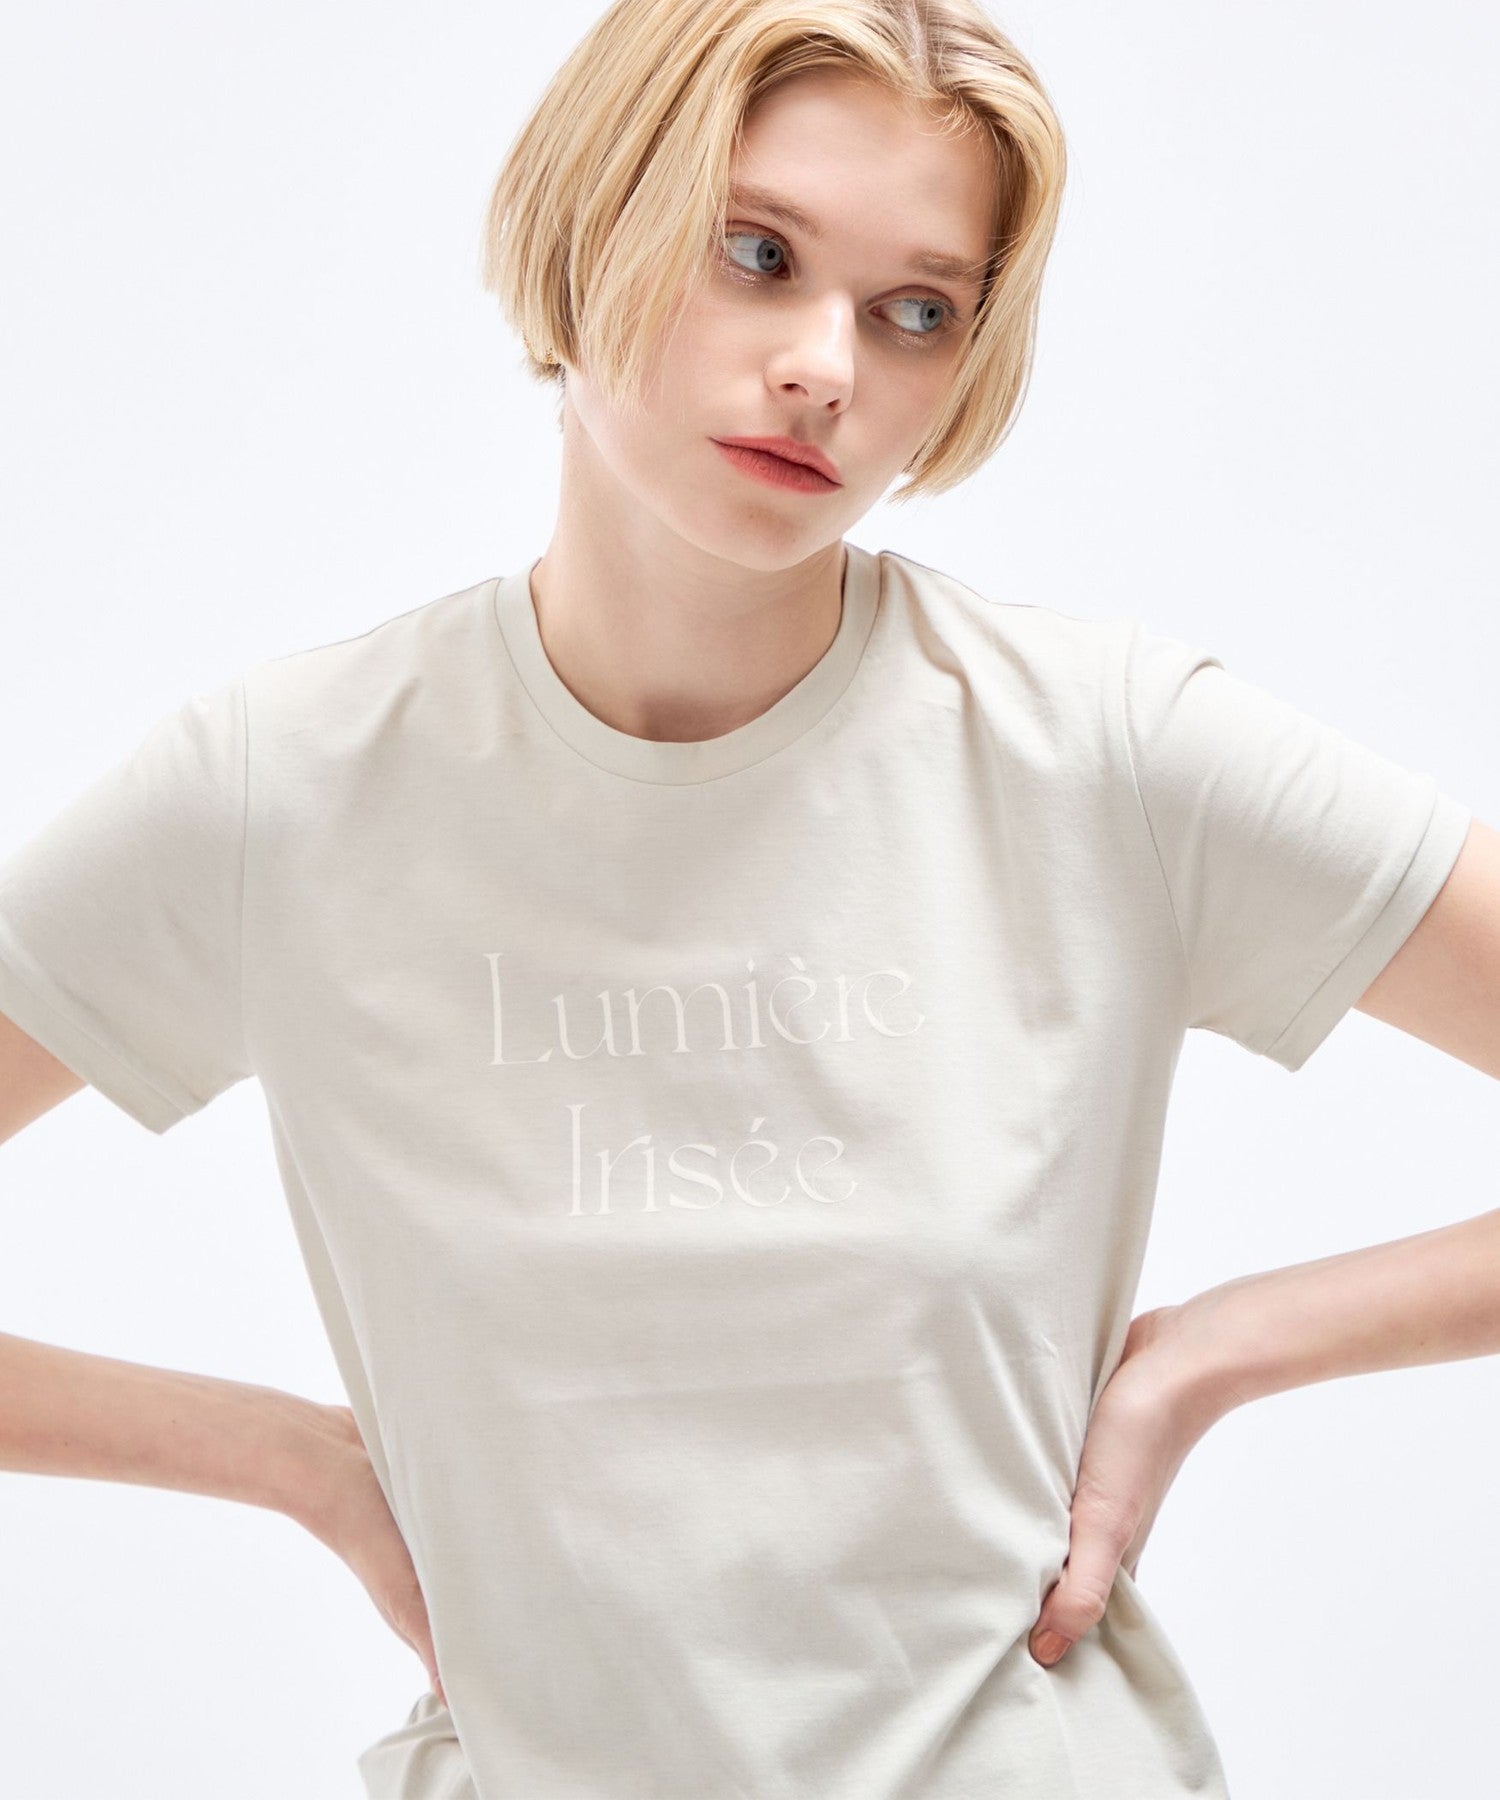 LUMIERE IRISE T -shirt